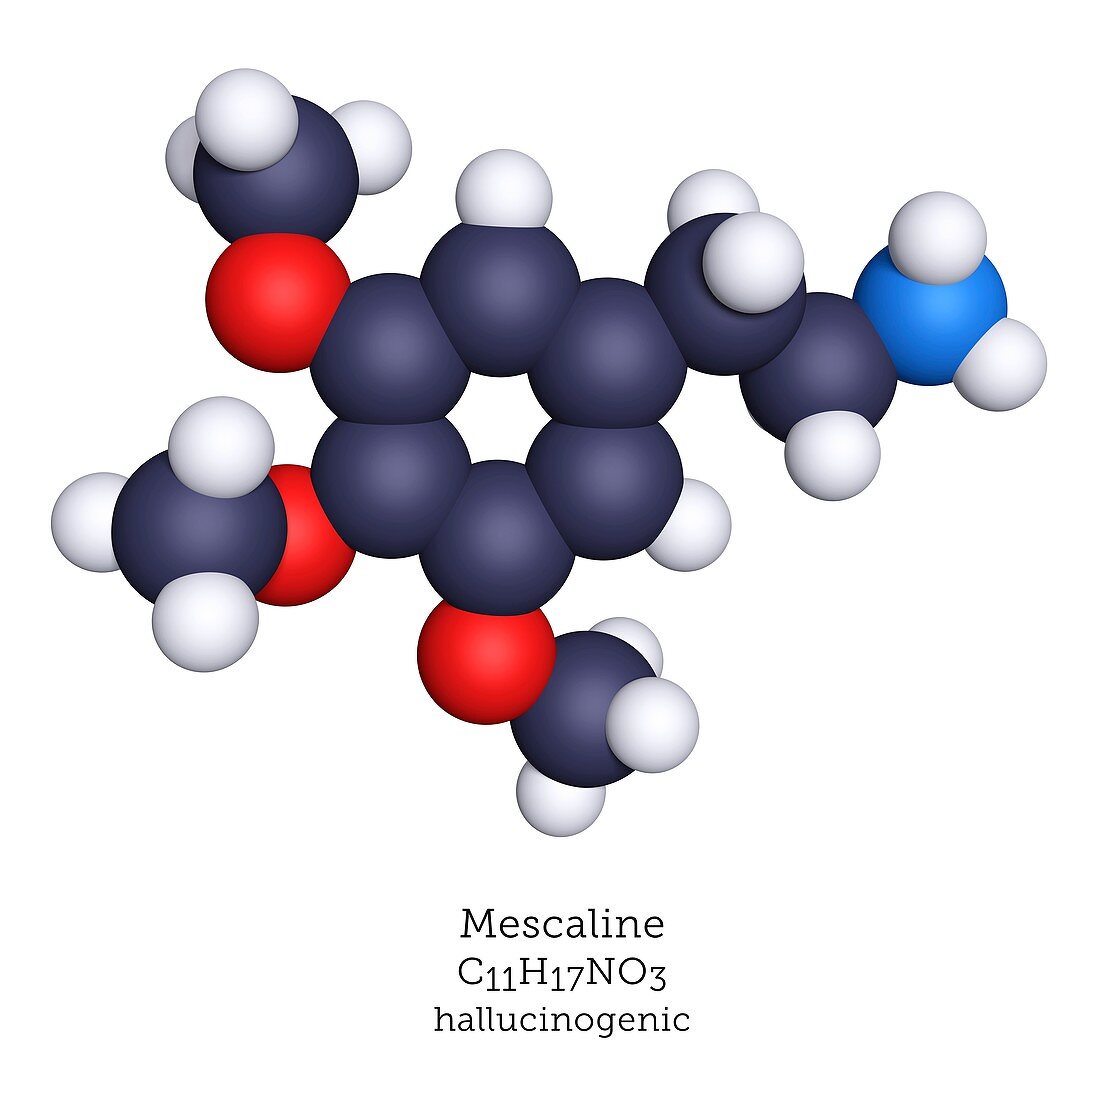 Mescaline, molecular model